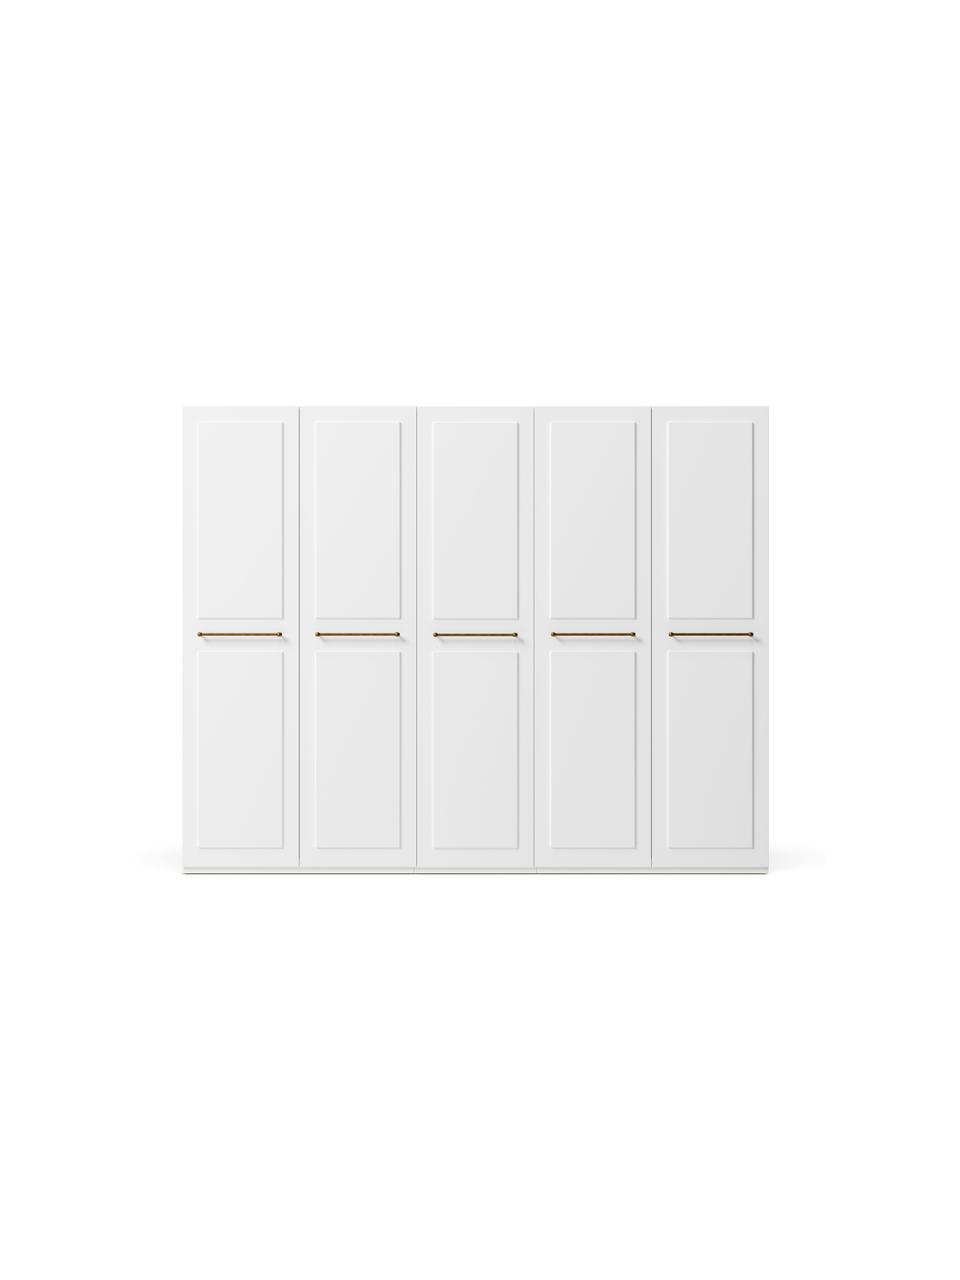 Modularer Drehtürenschrank Charlotte in Weiß mit 5 Türen, verschiedene Varianten, Korpus: Spanplatte, melaminbeschi, Weiß, B 250 x H 200 cm, Basic Interior